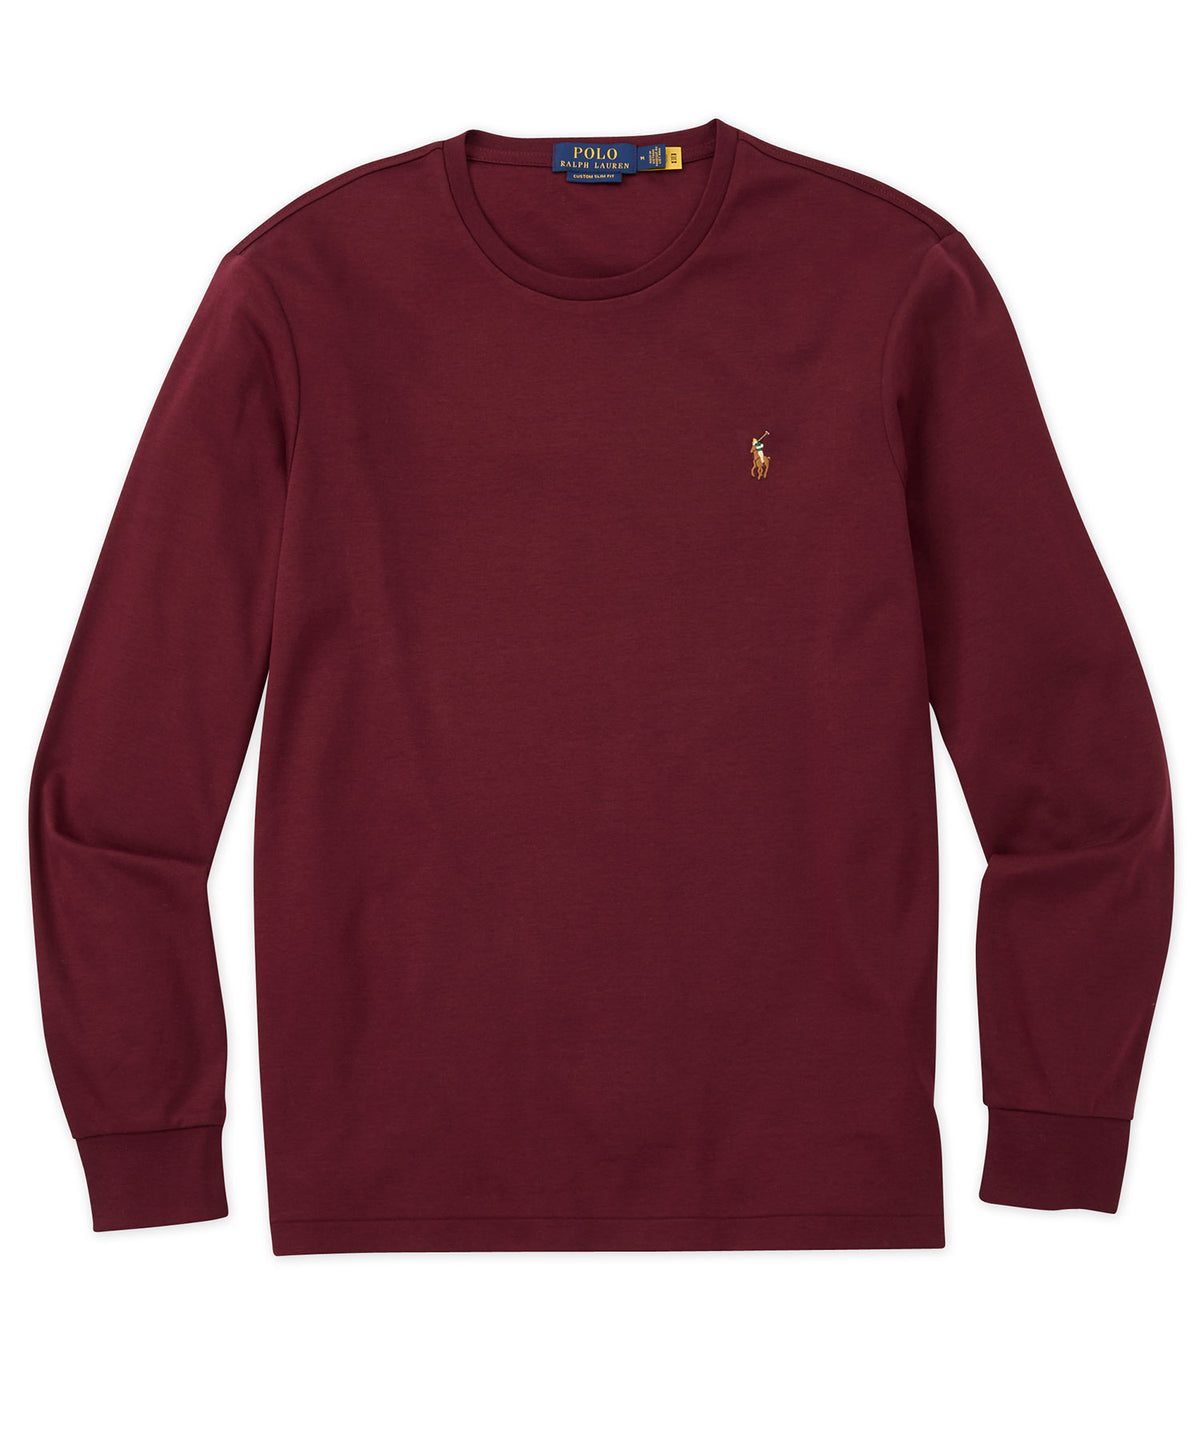 Polo Ralph Lauren Long Sleeve Soft Touch T-Shirt